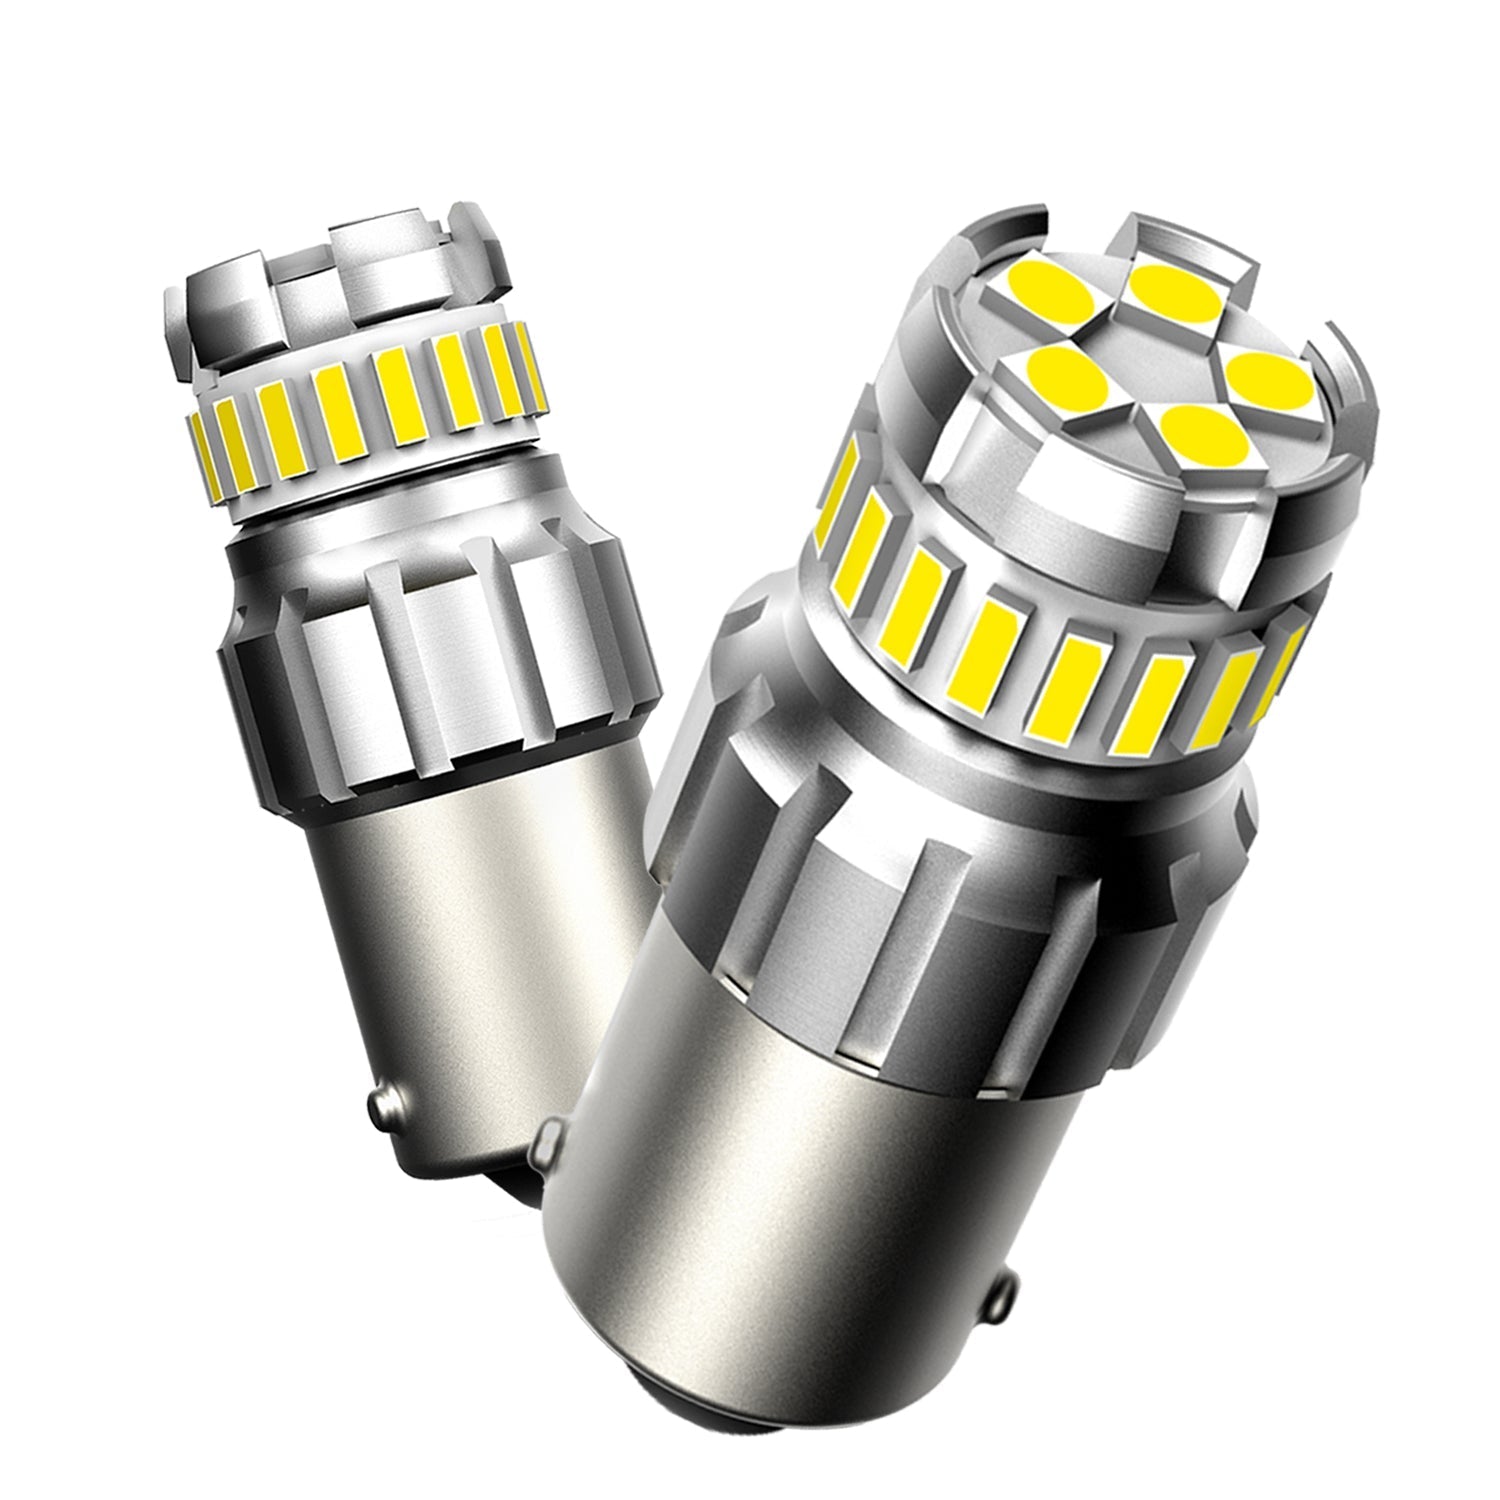 Autoone Headlight Bulb 1156 LED Daytime Running Light Bulbs 6500K White 2 PCS